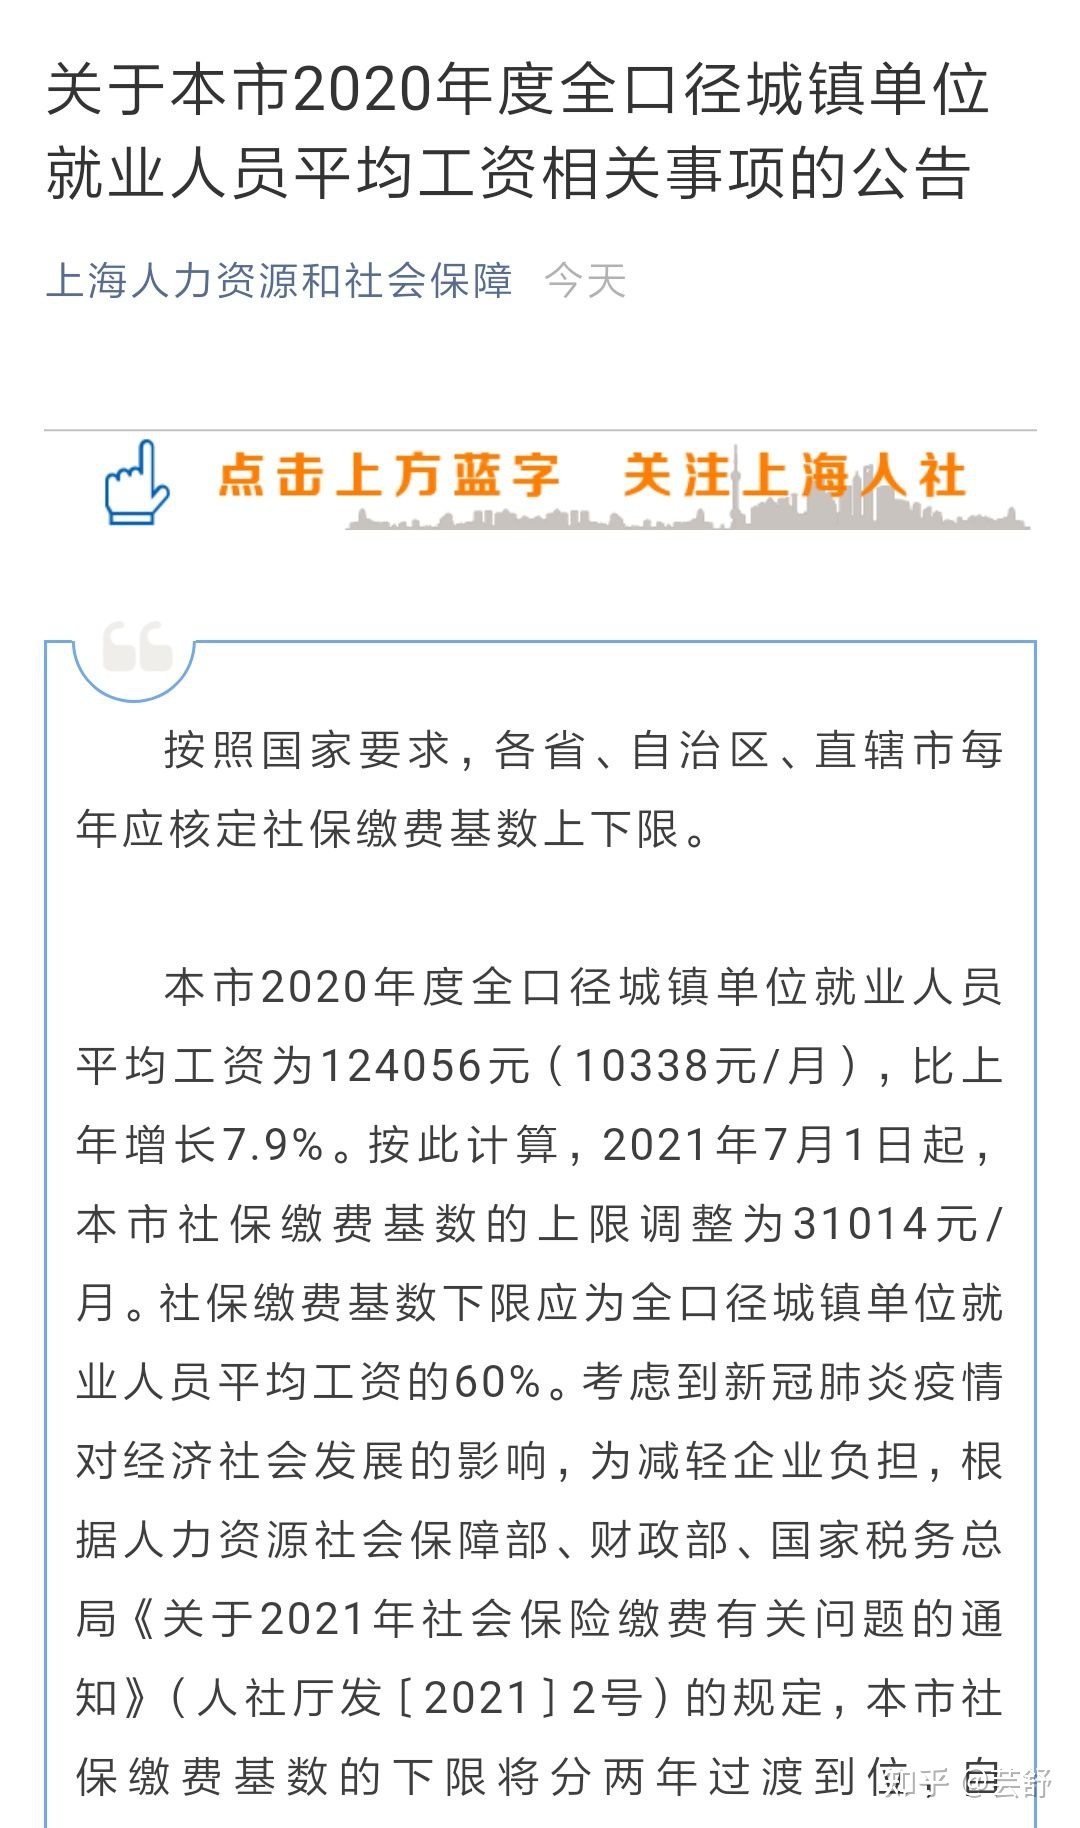 2022年落户上海社保依然按照基数10338元